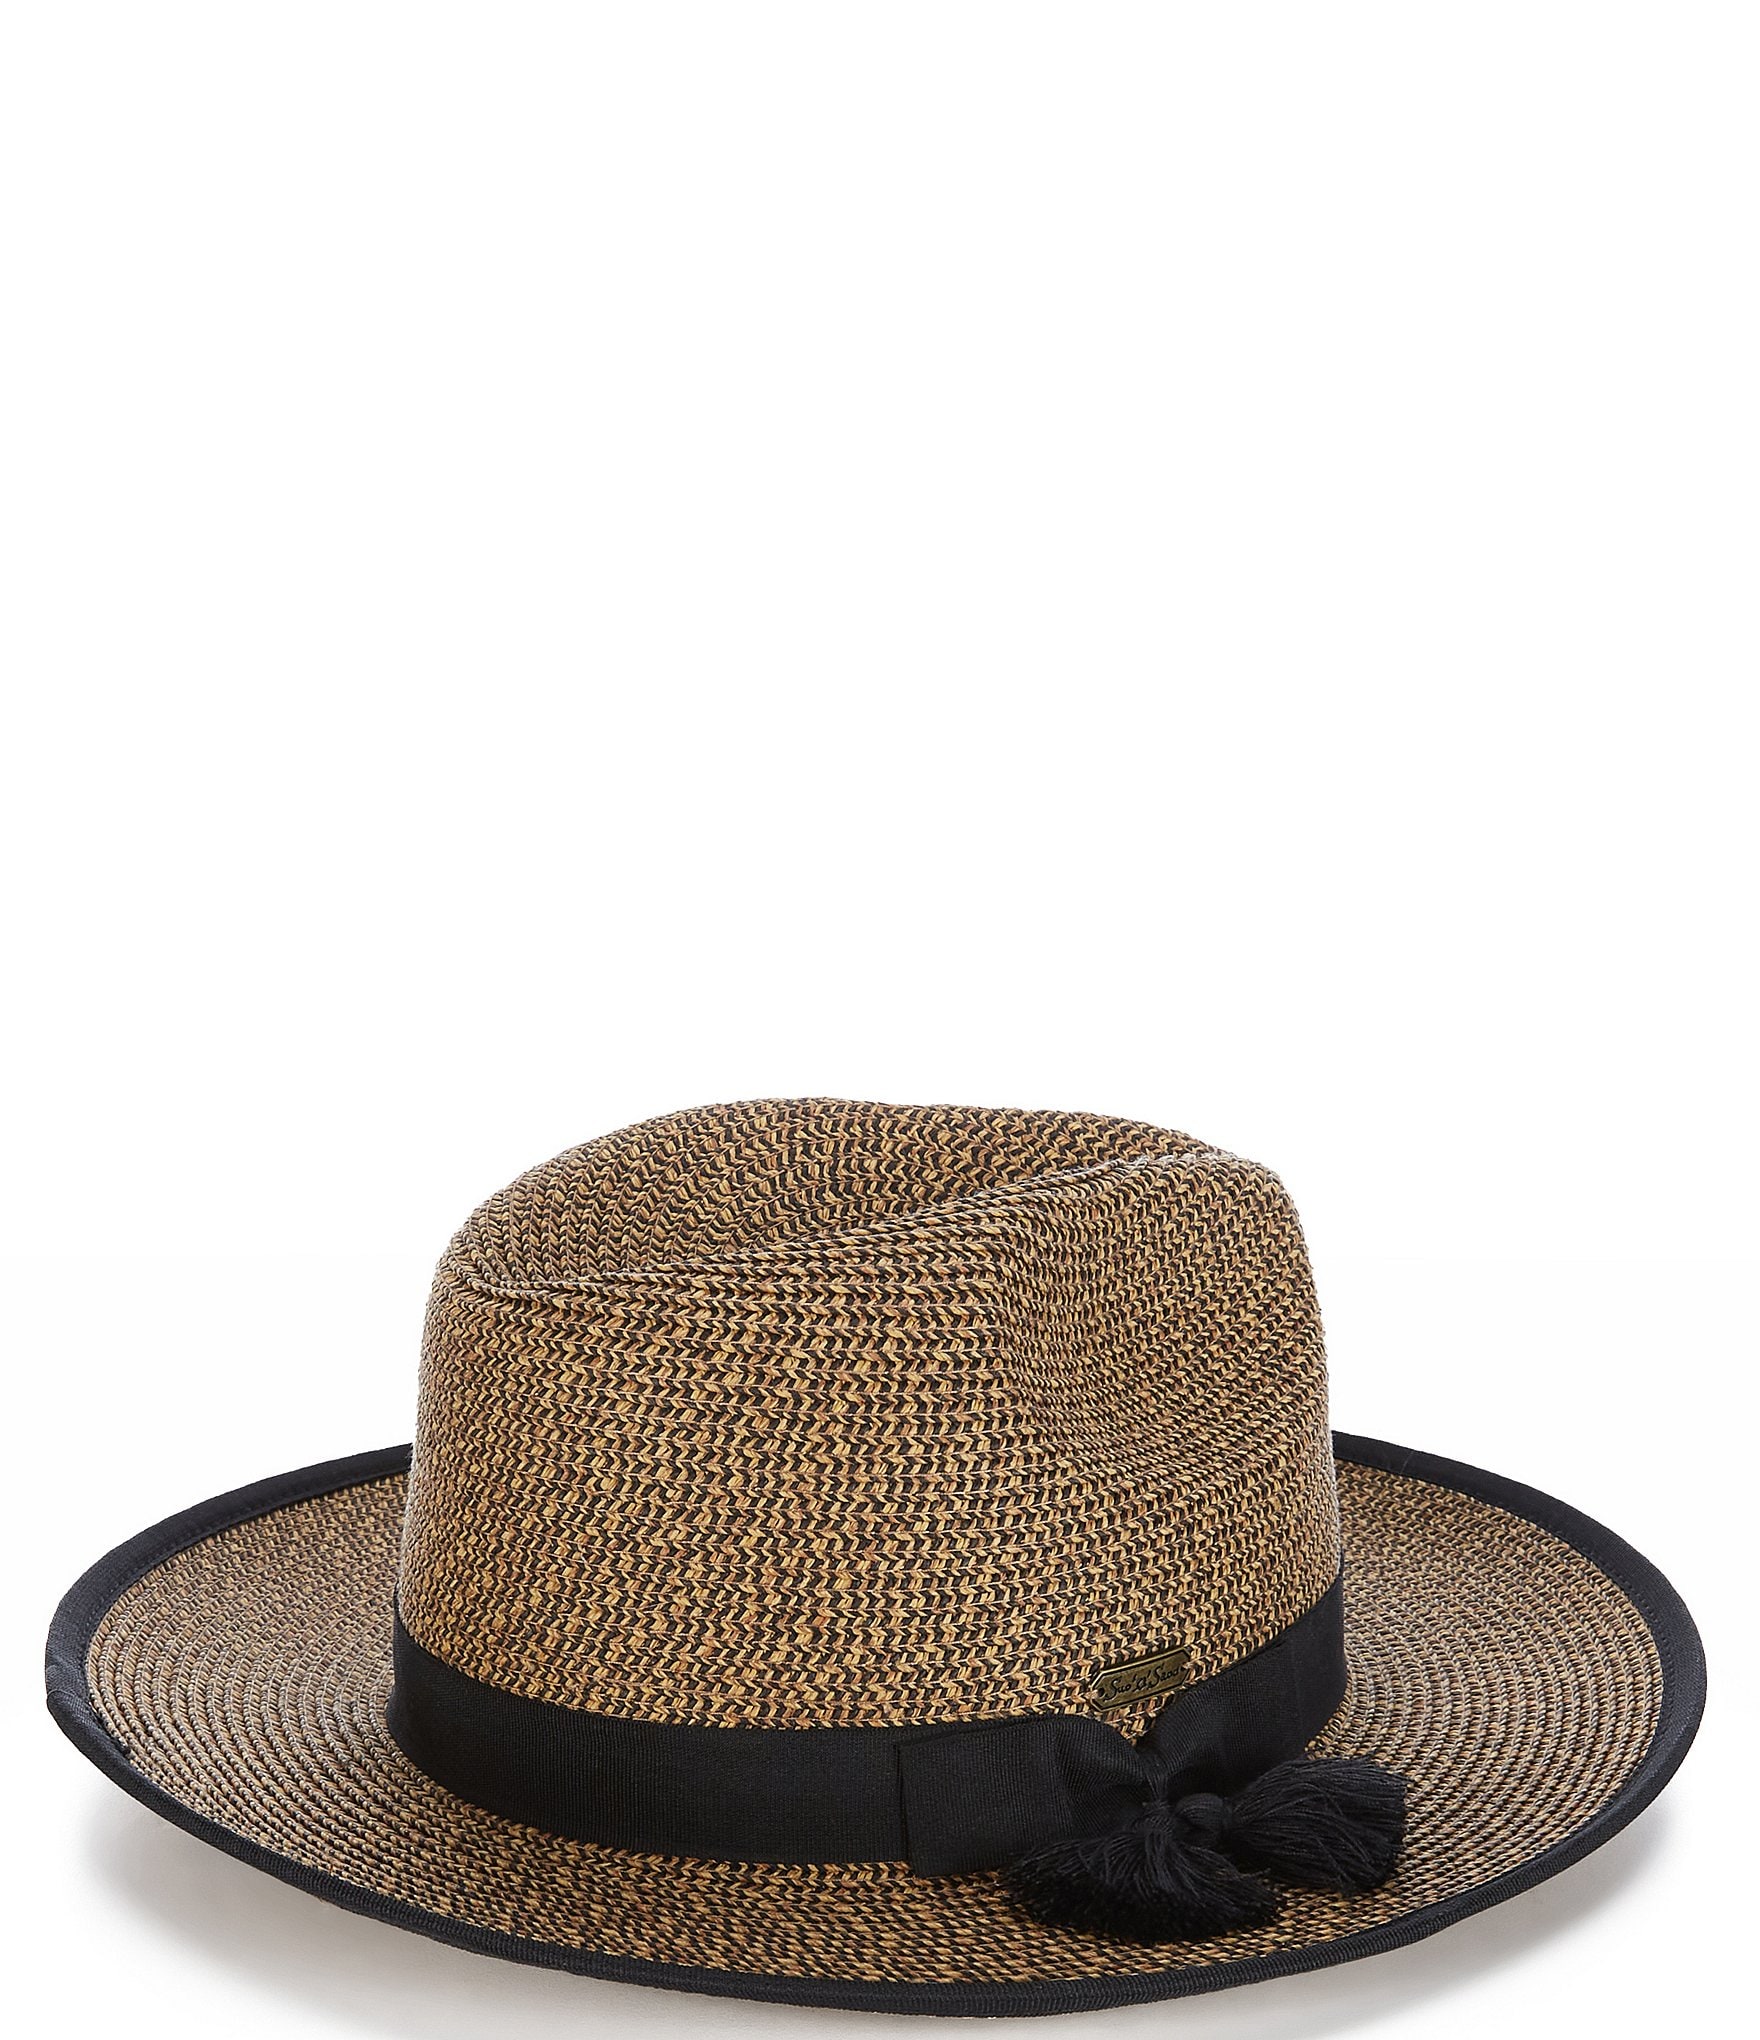 Paper Braid Straw Safari Sun Hat